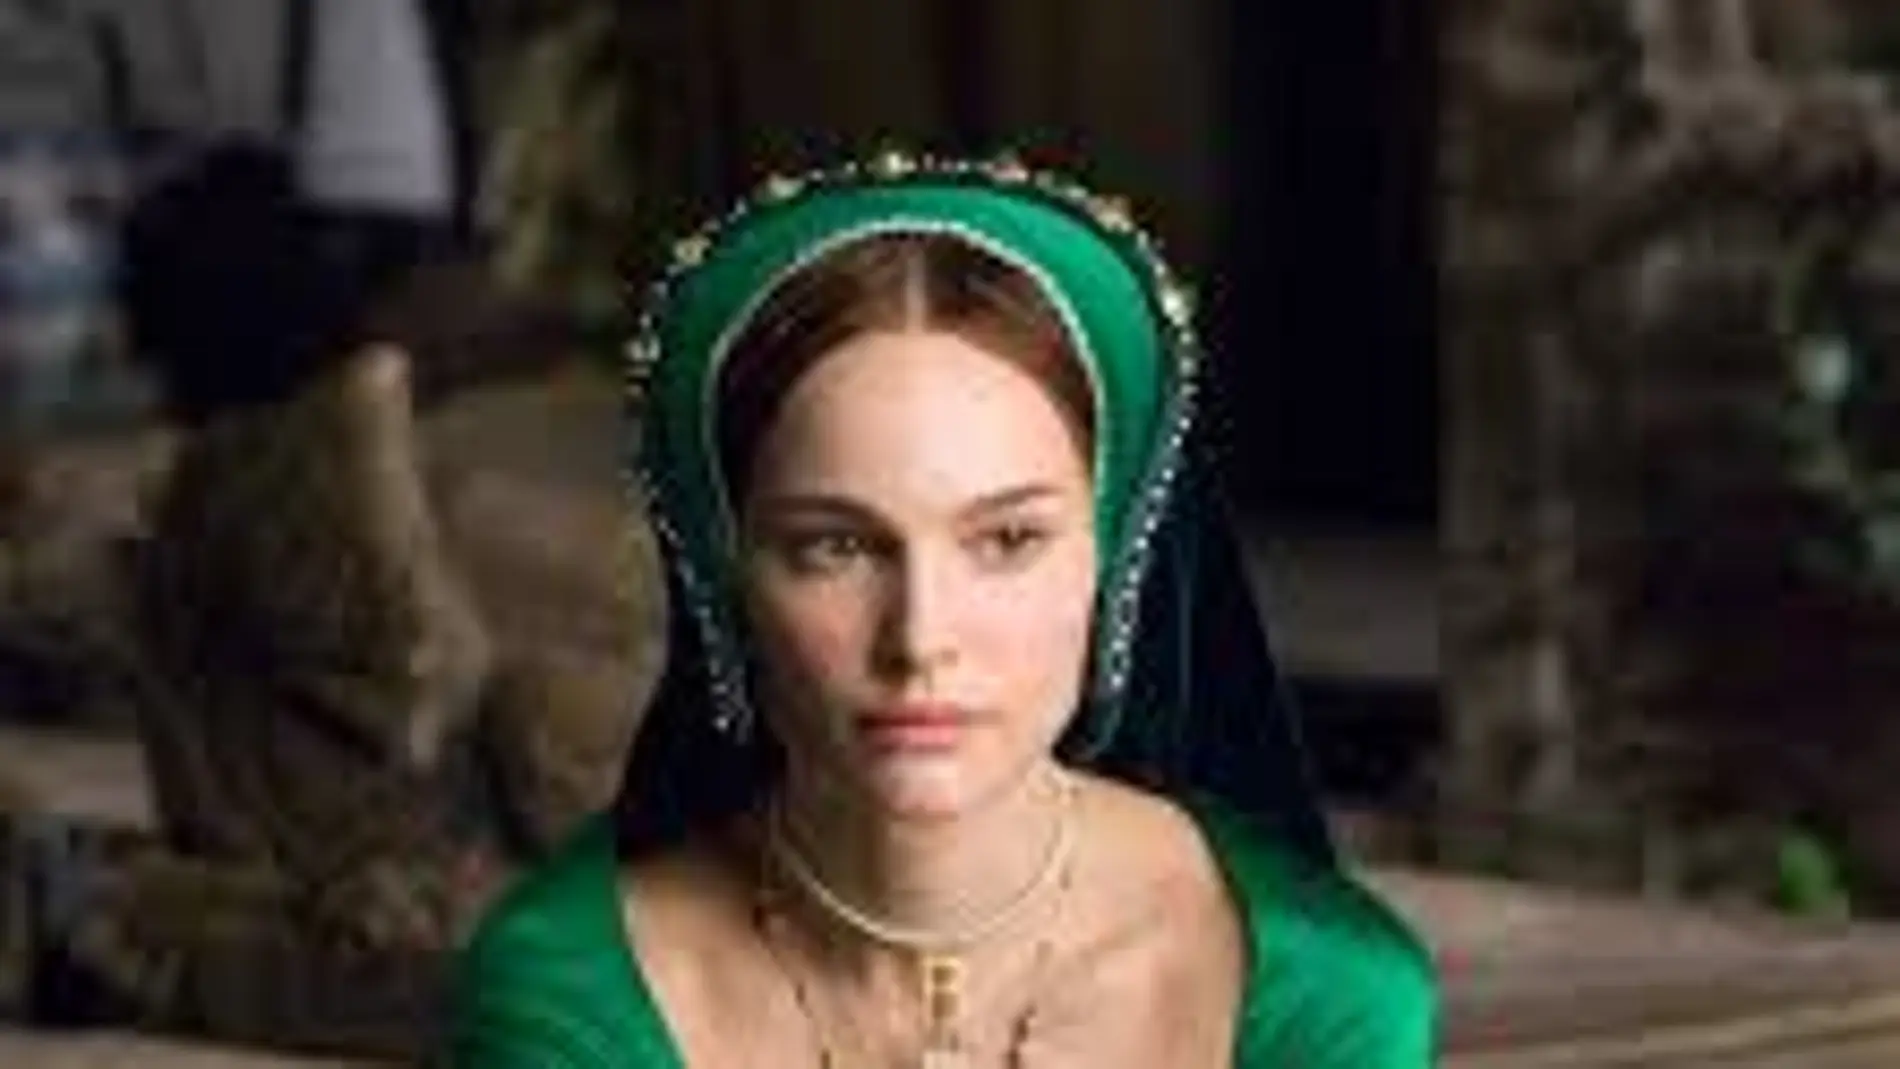 Natalie Portman en "Ana Bolena" (Justin Chadwick 2008) con joya inicial, muy tendencia en esa época.